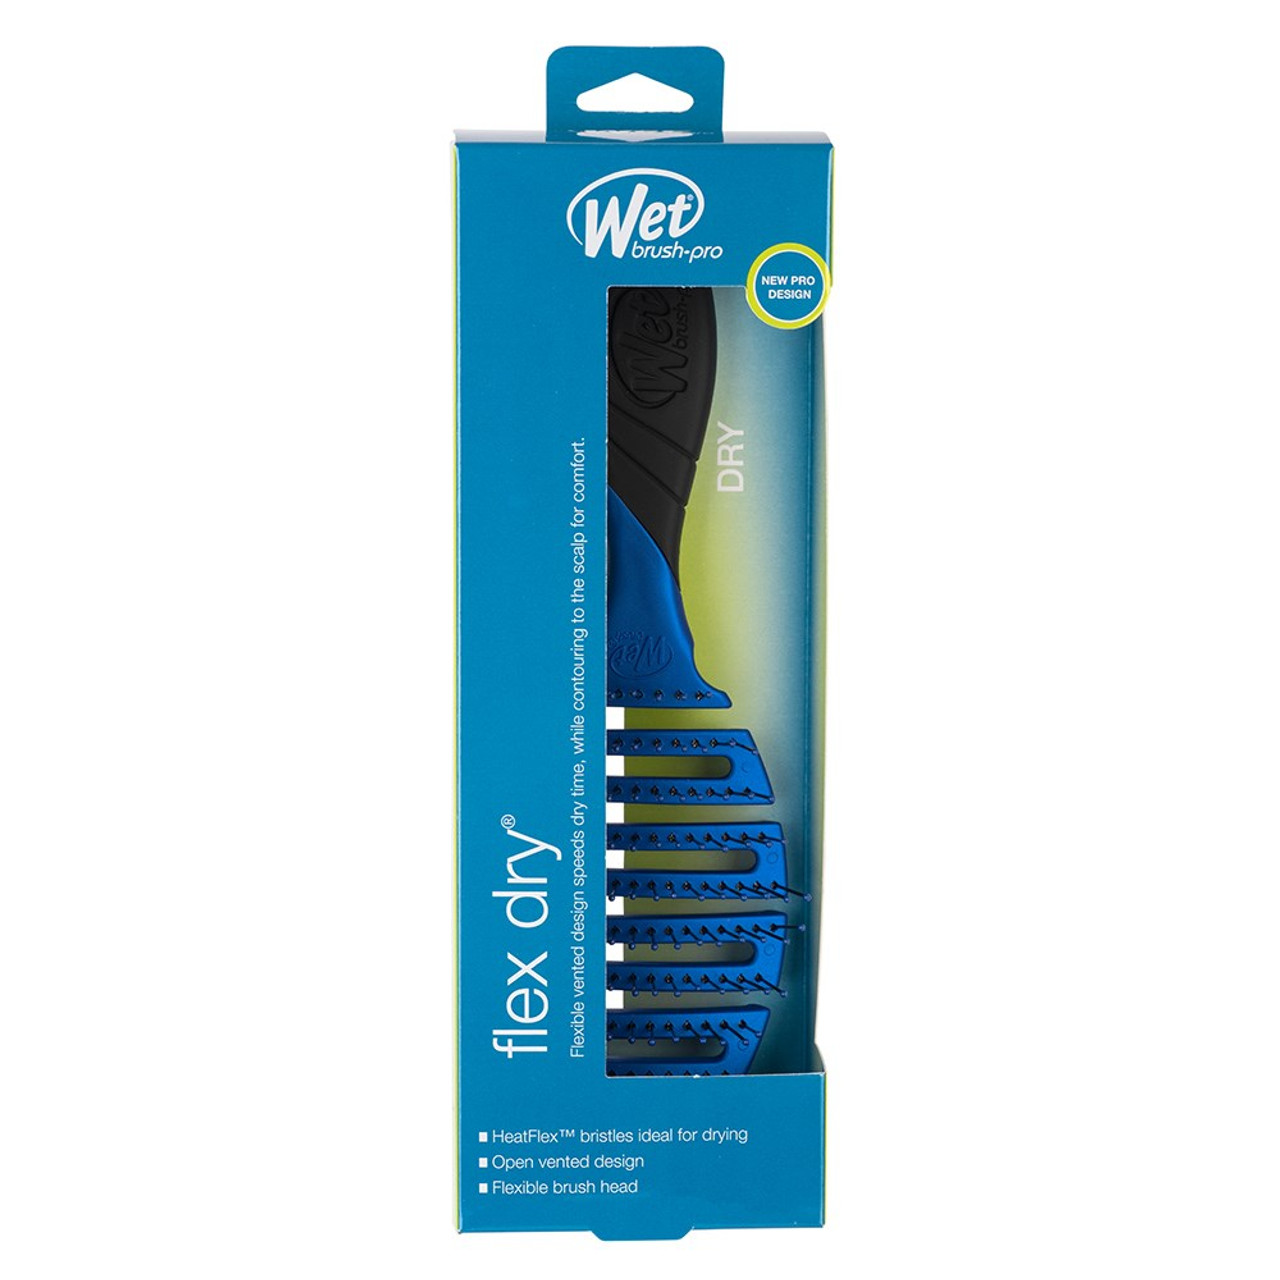 Wet Brush Pro Flex Dry Hair Brush - Royal Blue